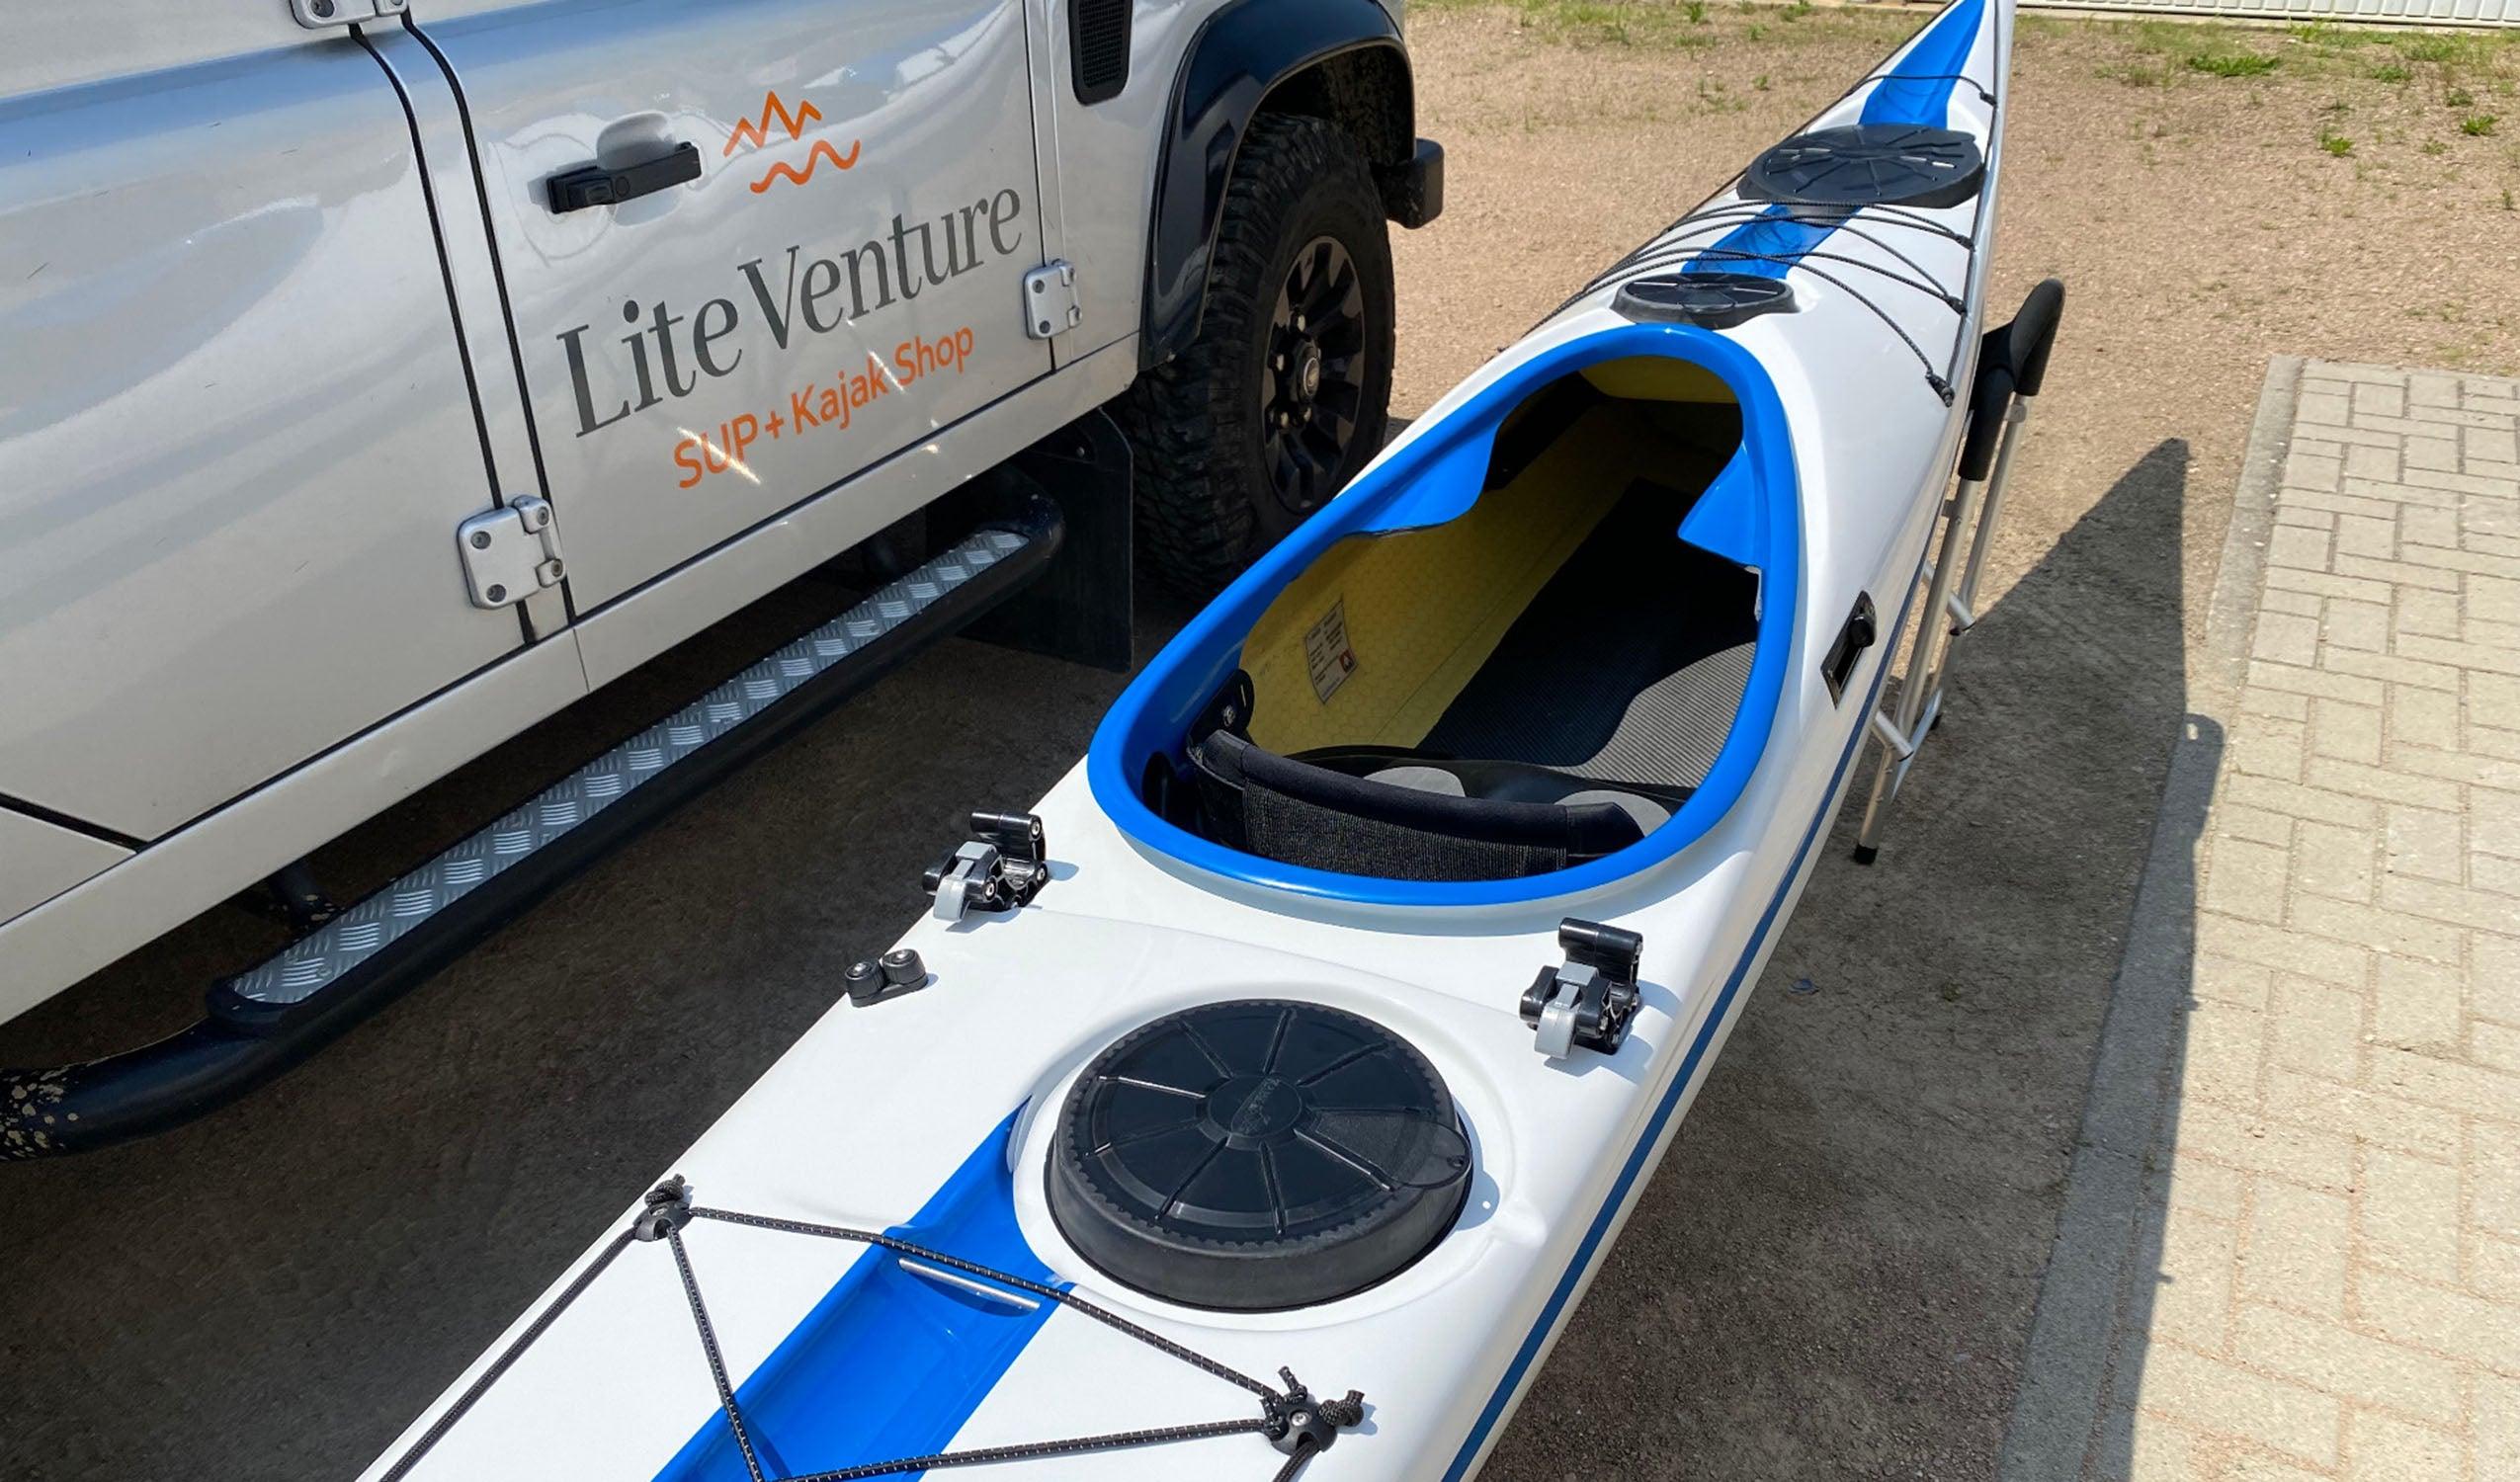 Produktbild von Kajak " Beaufort Rockhopper-weiß blau " der Marke SKIM Kayaks für 4350.00 €. Erhältlich online bei Lite Venture ( www.liteventure.de )